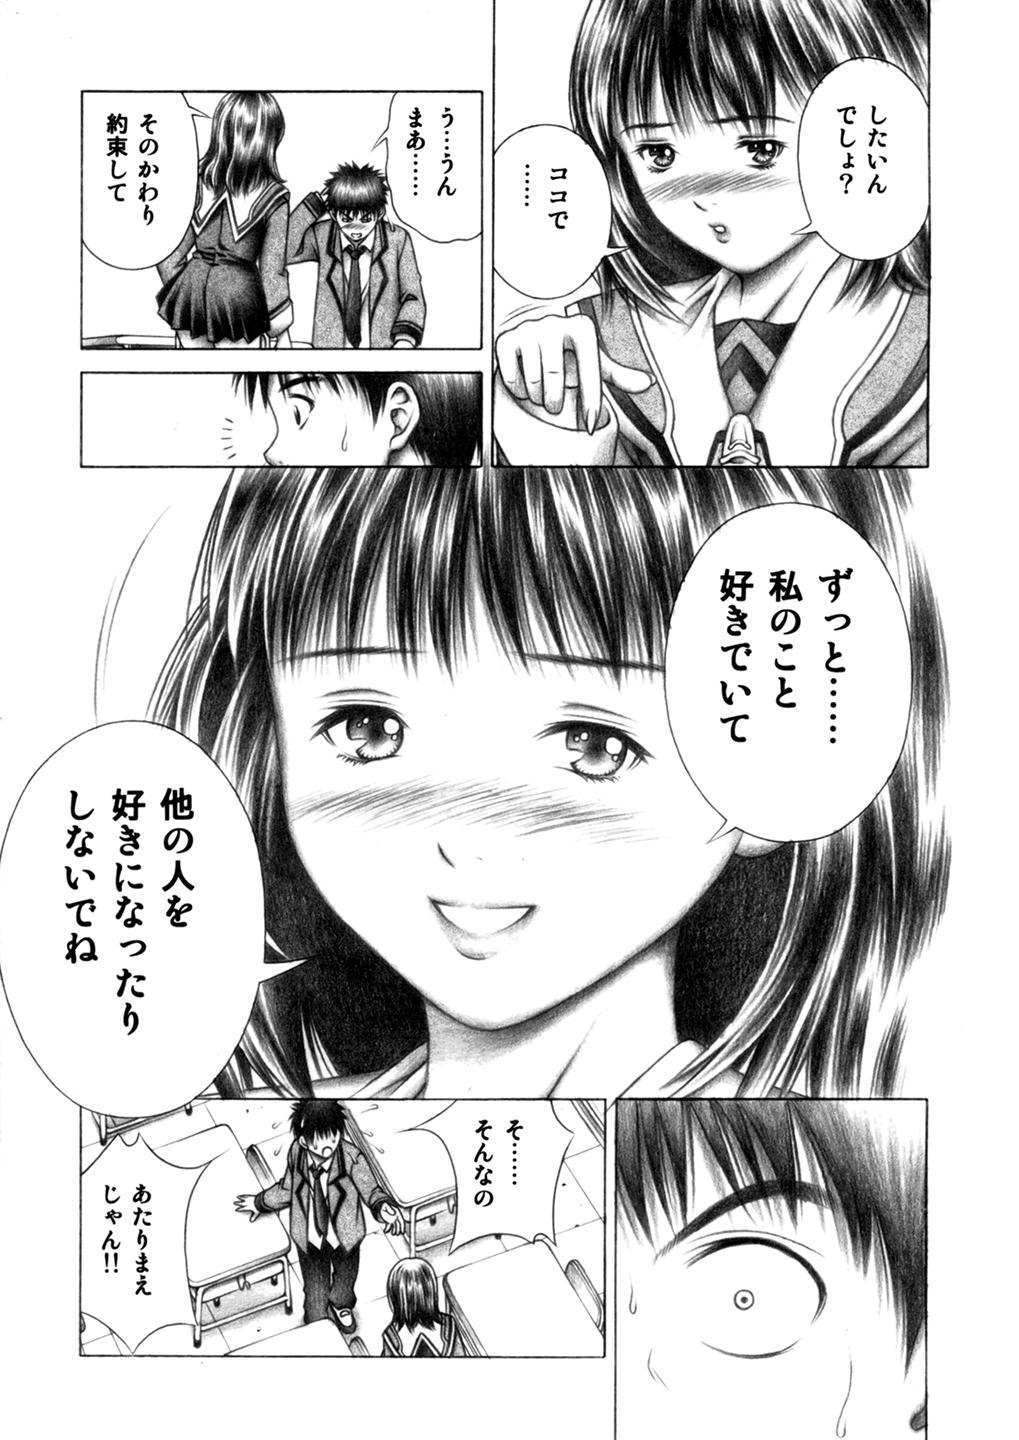 Rubia Iori to Fuwafuwarin - Is Comendo - Page 6